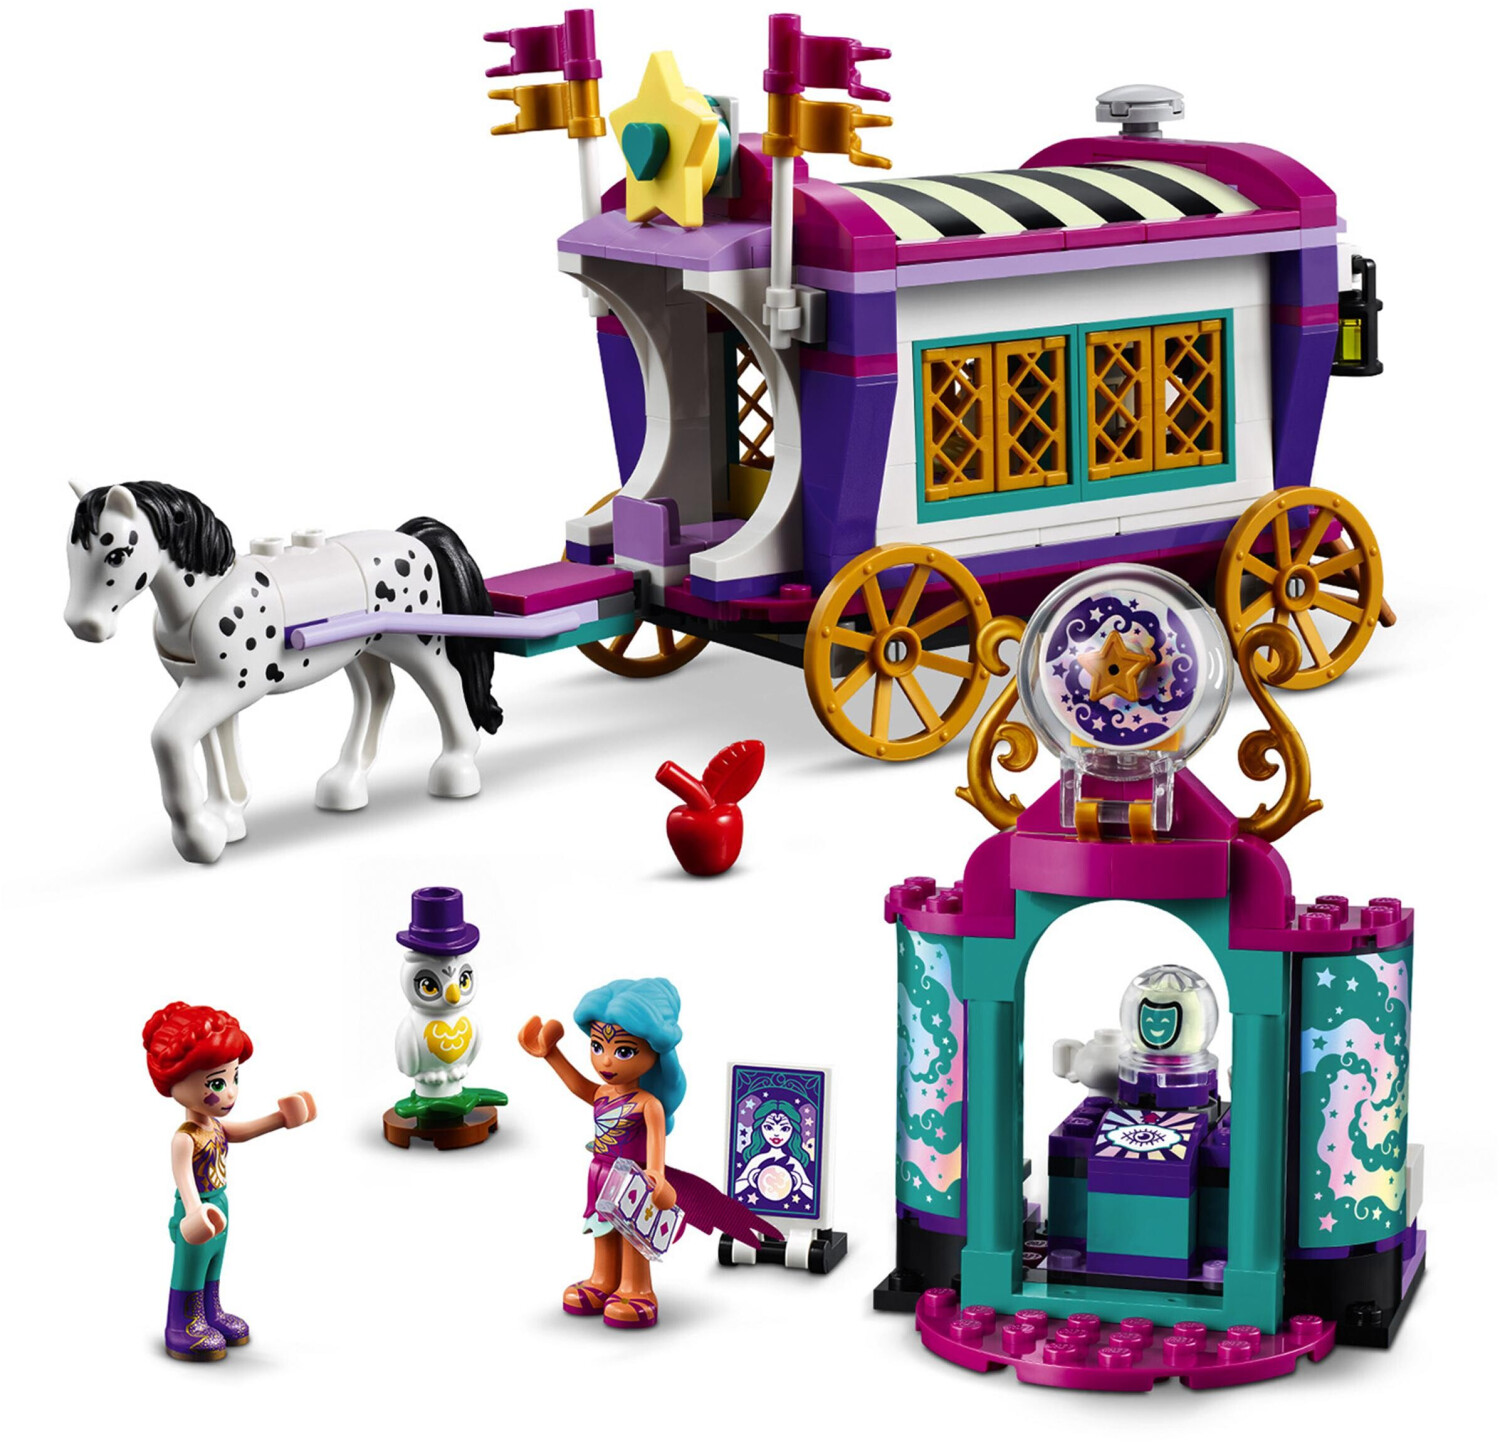 € | Wohnwagen bei Preisvergleich (41688) 34,95 ab Magischer LEGO Friends